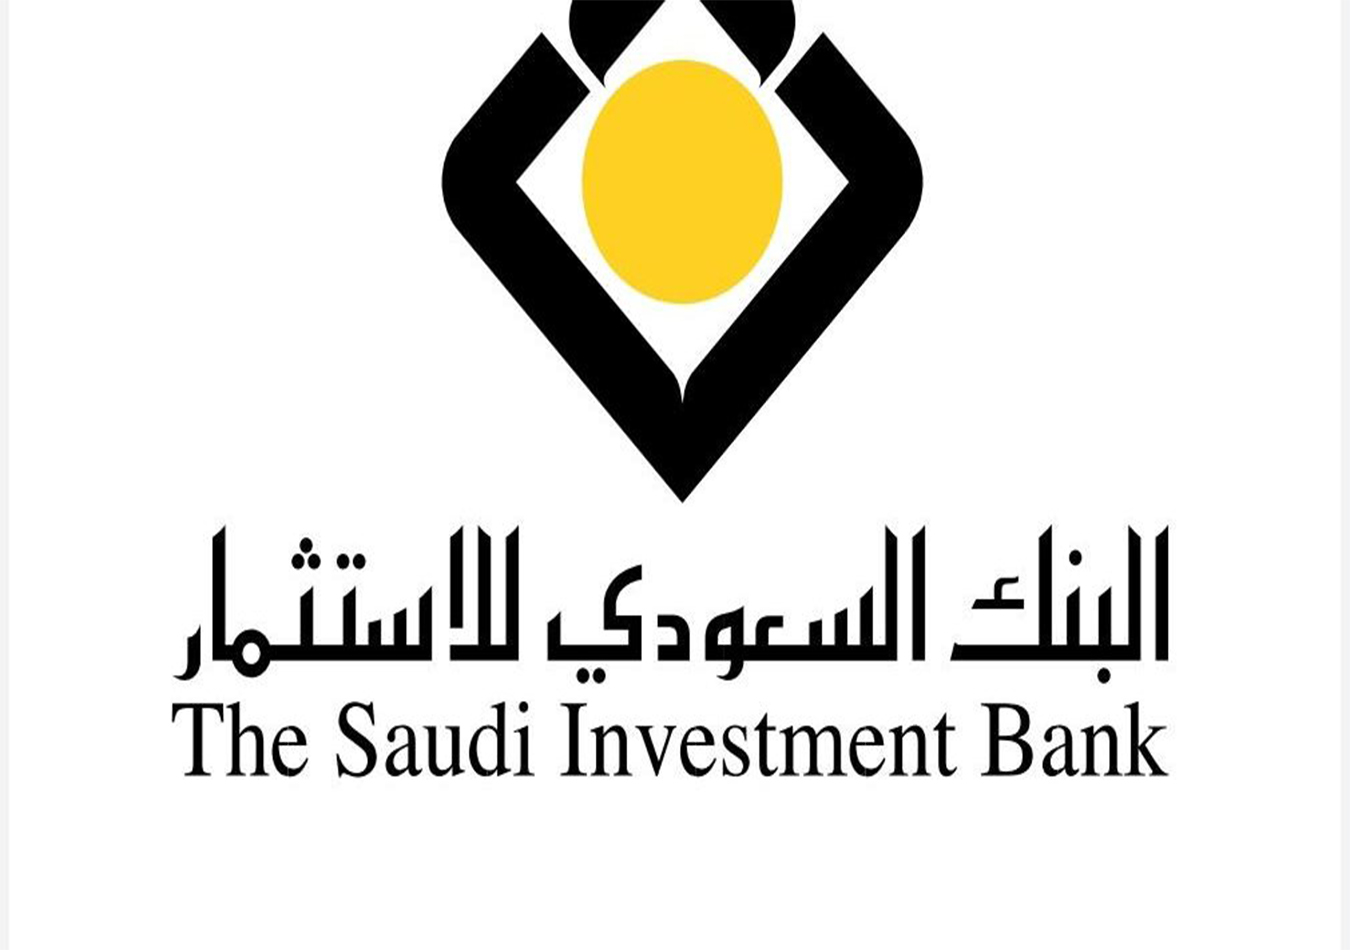 فتح حساب البنك السعودي للاستثمار